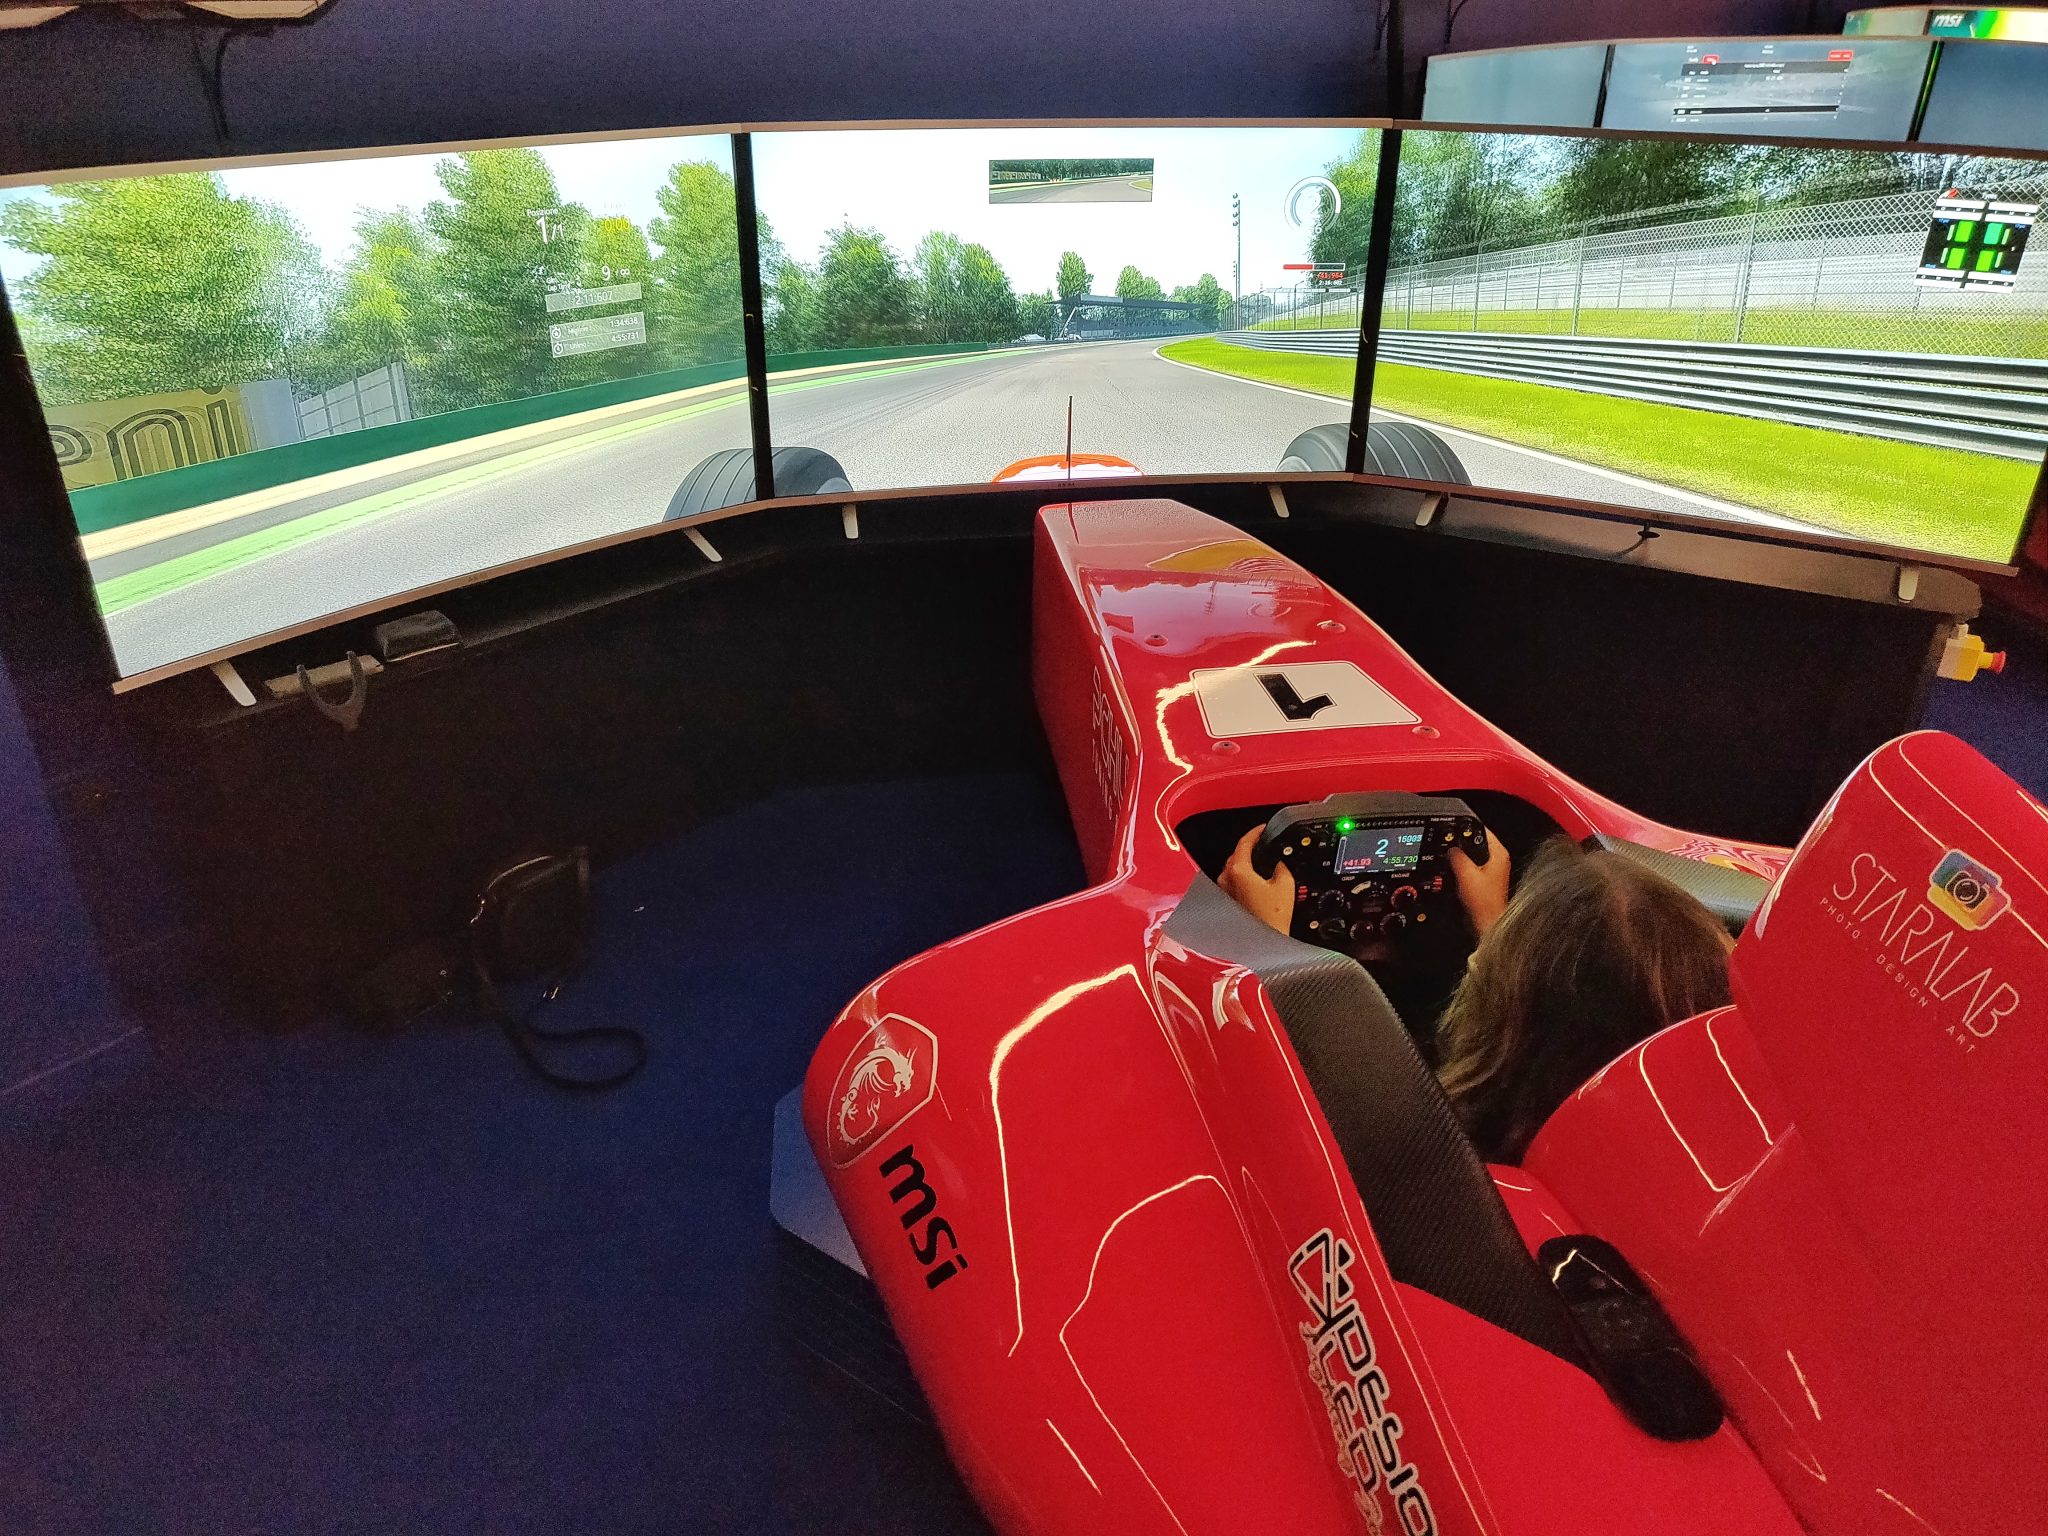 mcsim simulatore virtuale realtà f1 formula uno corsa pilota monza milano laura fasano benessere tecnologico tecnologia